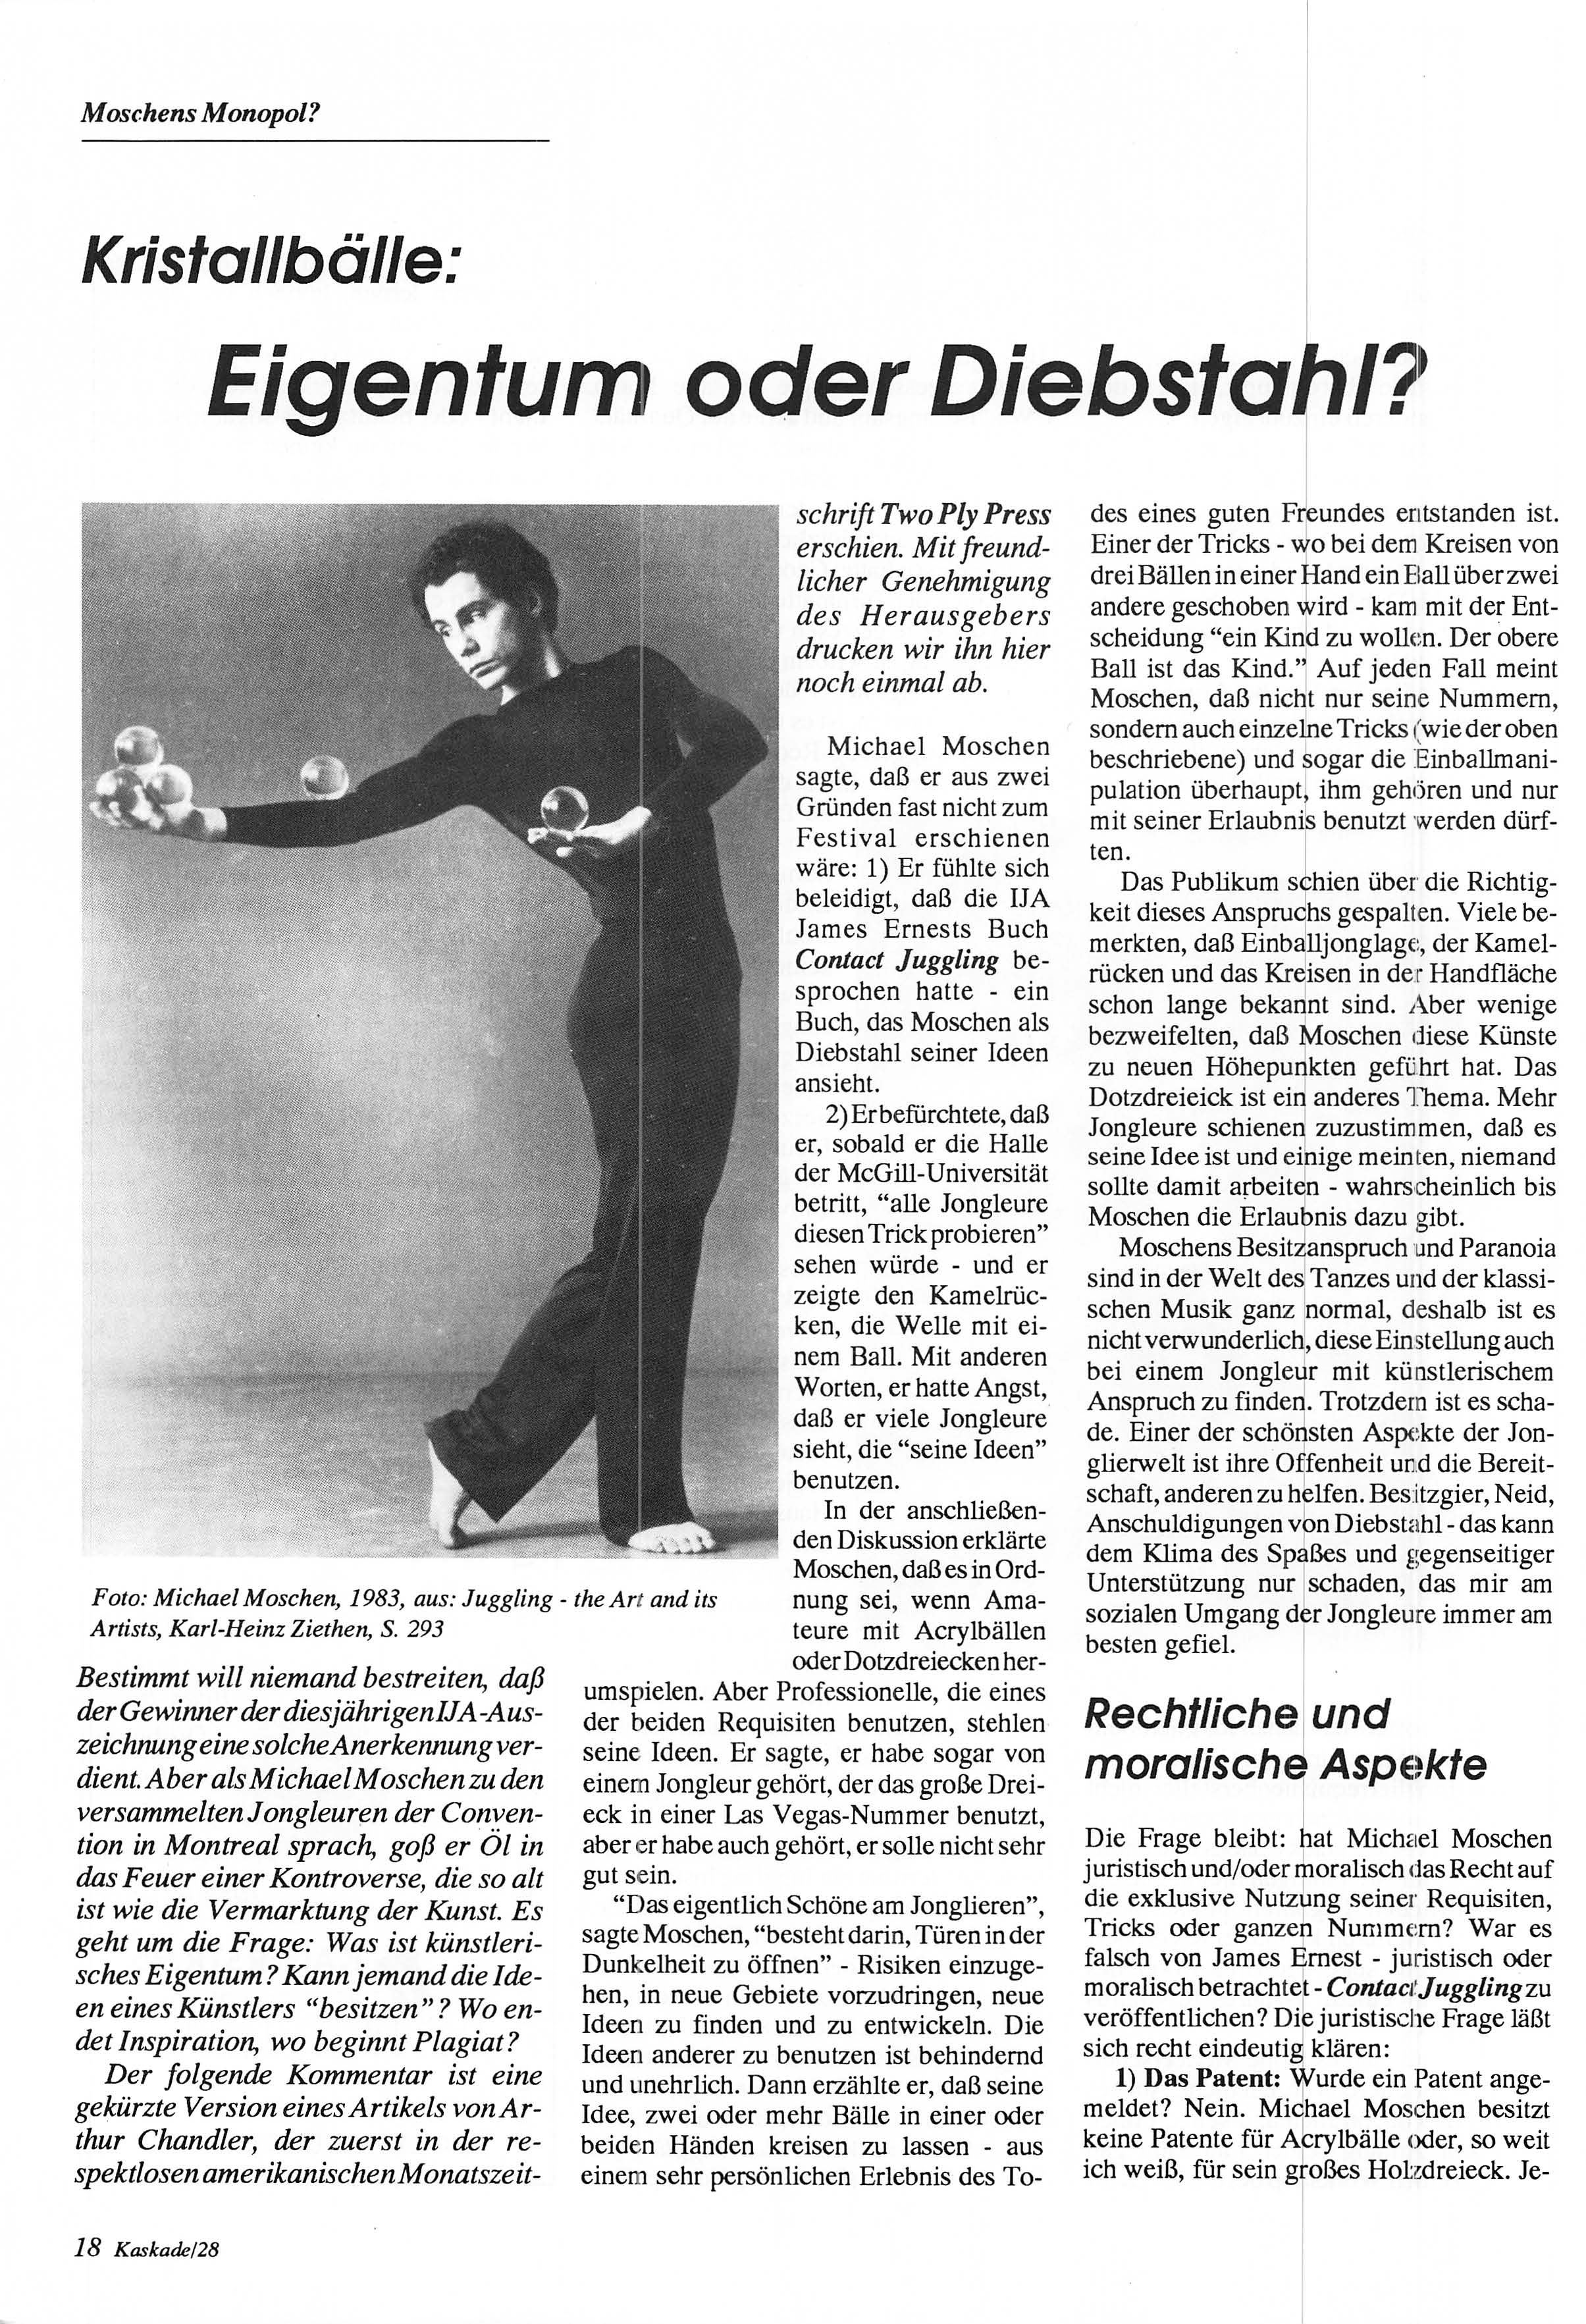 Moschens Monopol? Kristallbälle: Eigentum oder Diebstahl?- Foto: Michael Moschen, 1983, aus: Juggling - theart and its Artists, Karl-Heinz Ziethen, S.